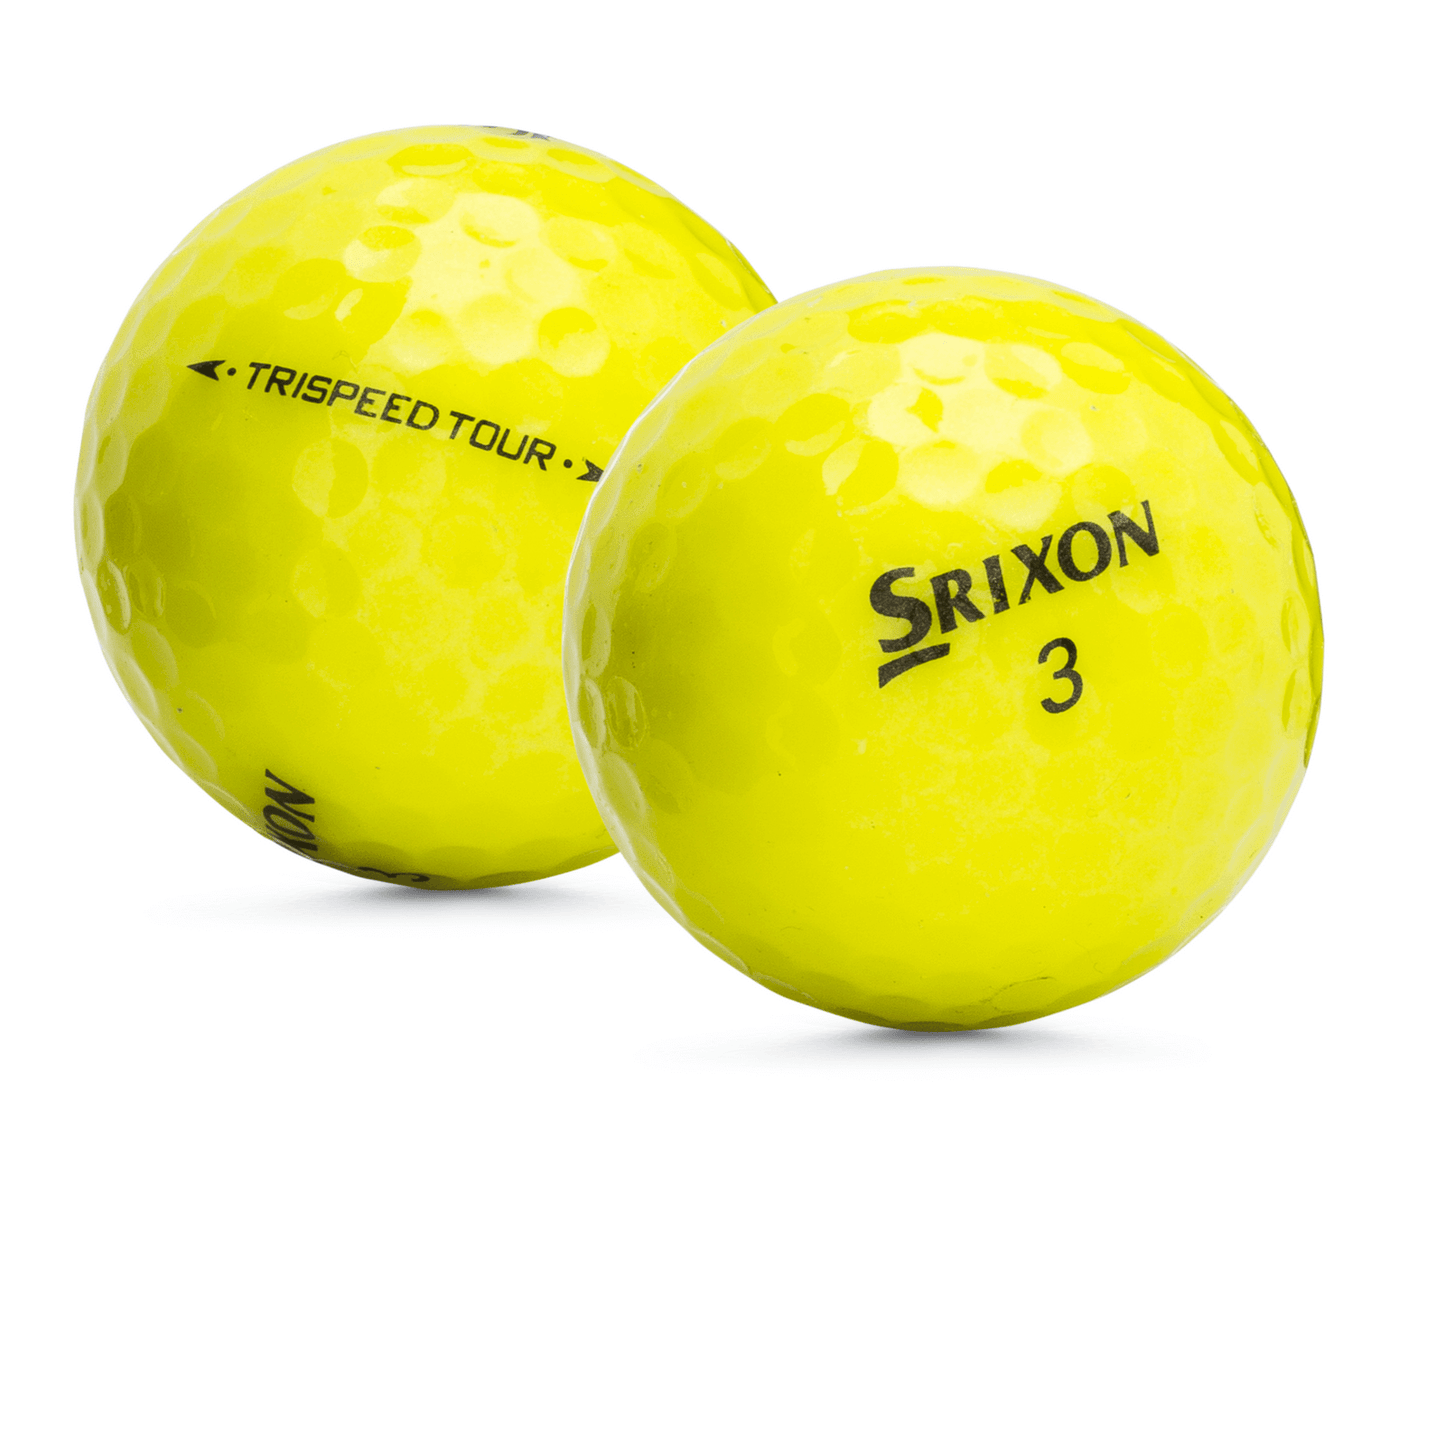 Used Srixon Trispeed Tour Yellow Golf Balls - 1 Dozen